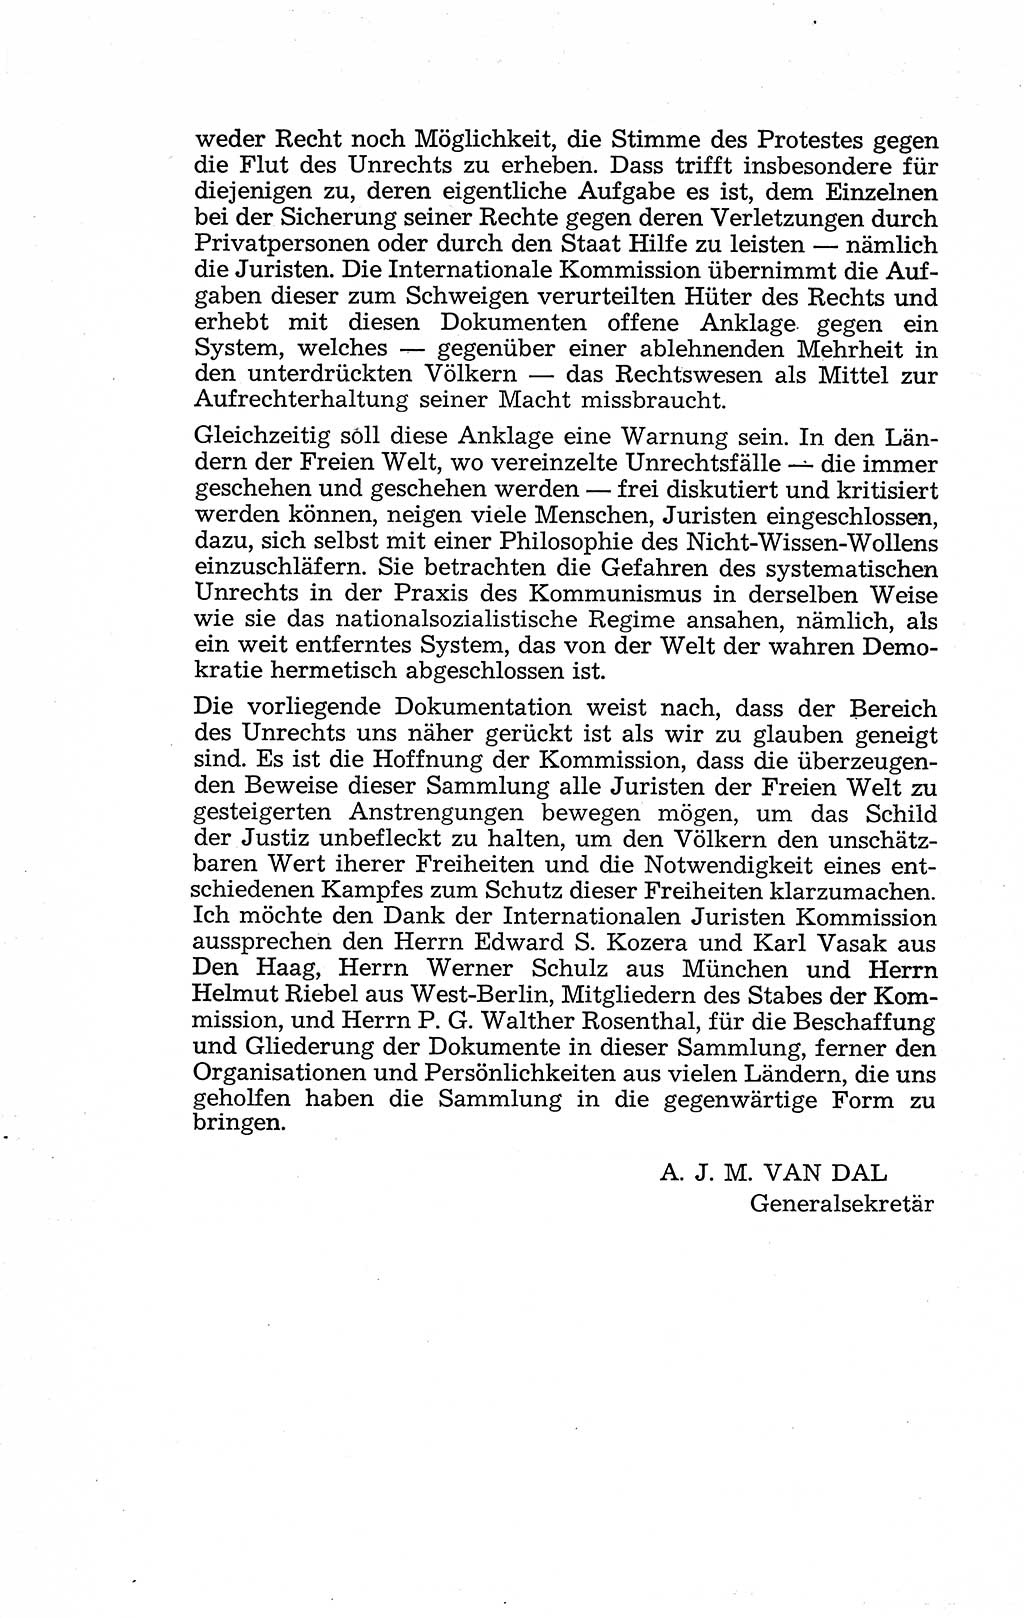 Recht in Fesseln, Dokumente, Internationale Juristen-Kommission [Bundesrepublik Deutschland (BRD)] 1955, Seite 6 (R. Dok. IJK BRD 1955, S. 6)